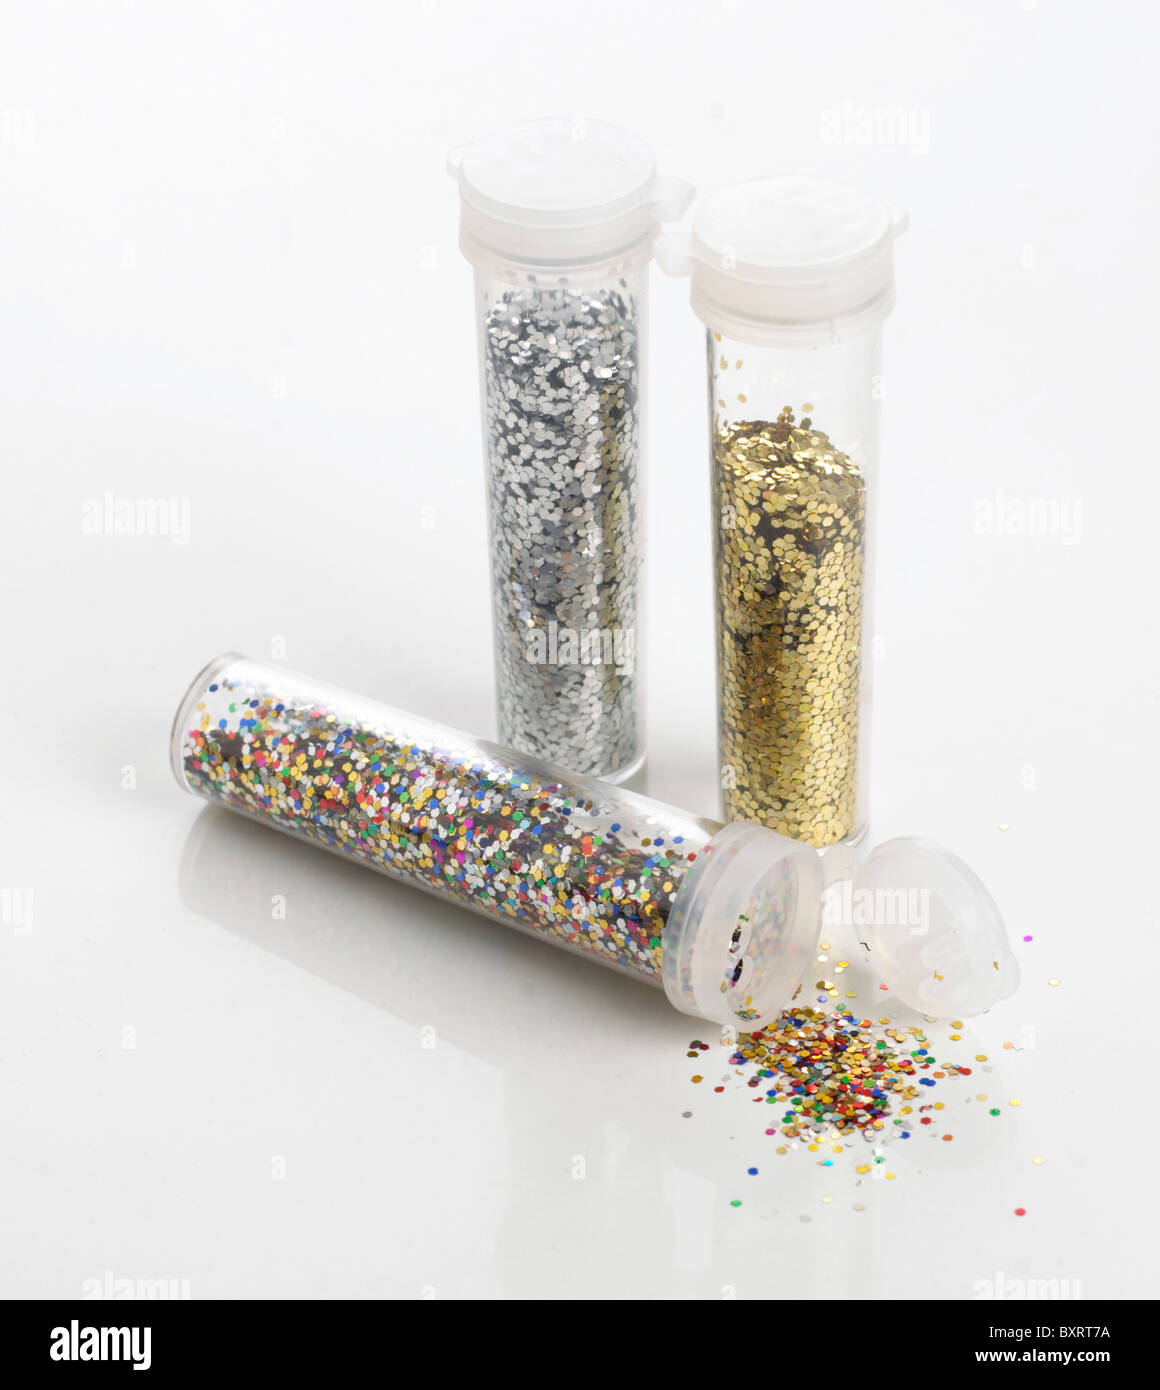 Farbige Glitter, Gold-Glitter und Silber Glitter in Kunststoffrohren. Stockfoto